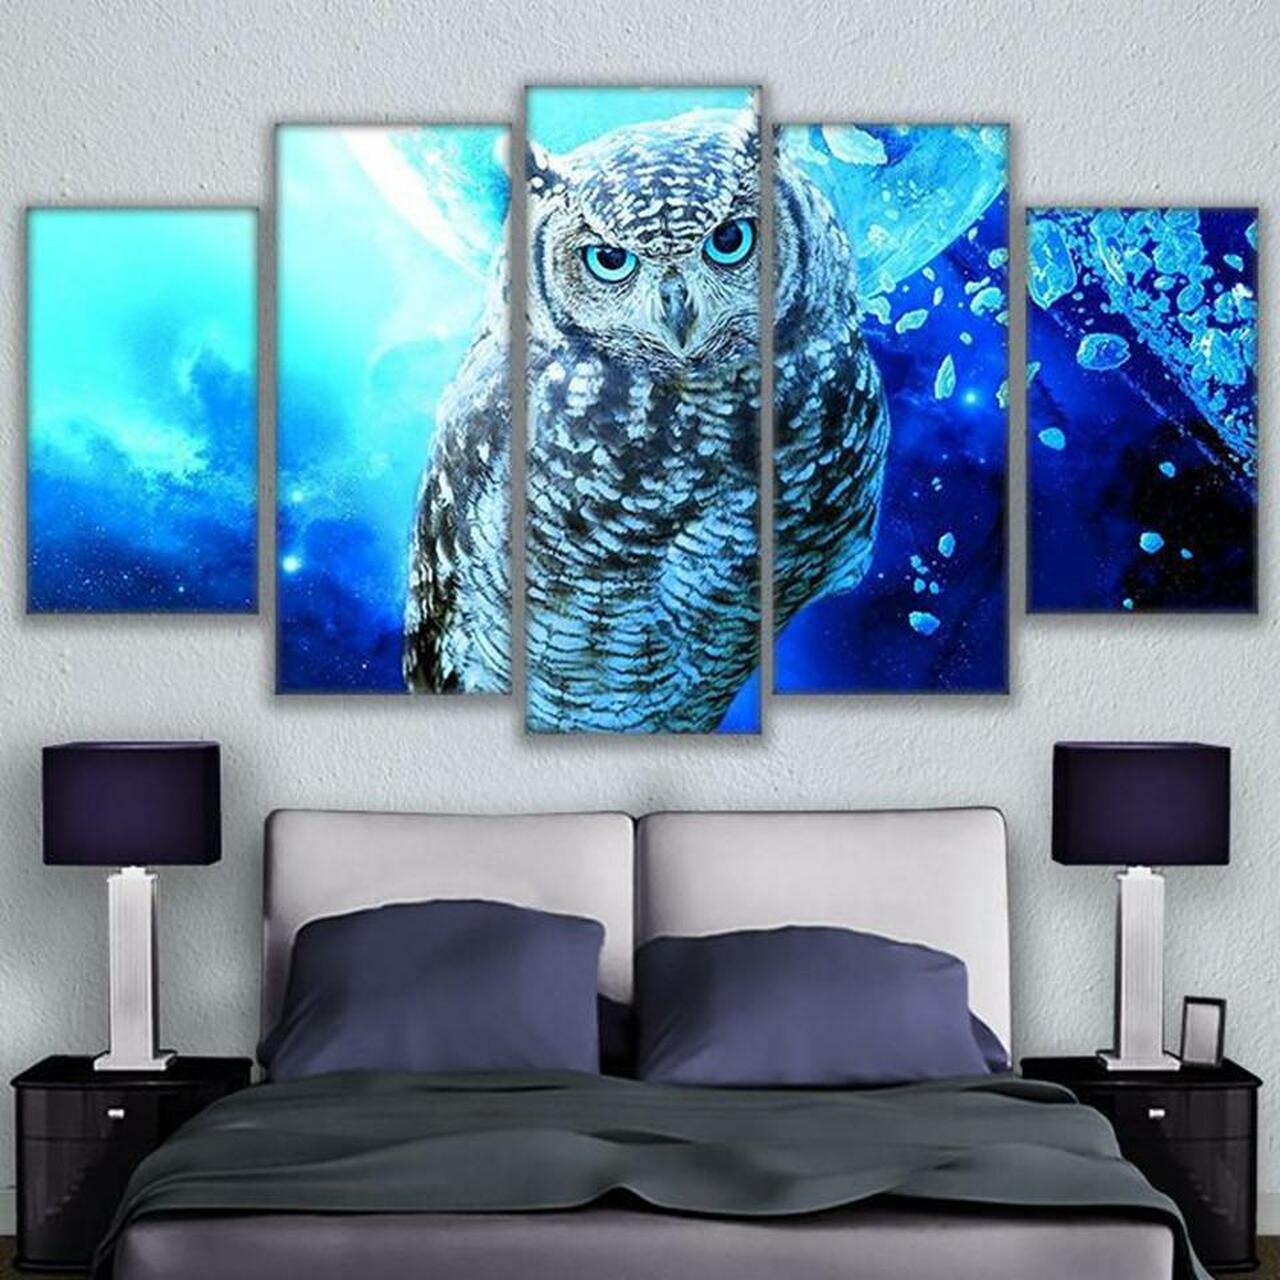 blue owl 5 pices peinture sur toile impression sur toile toile art pour la dcoration intrieurek2aw4